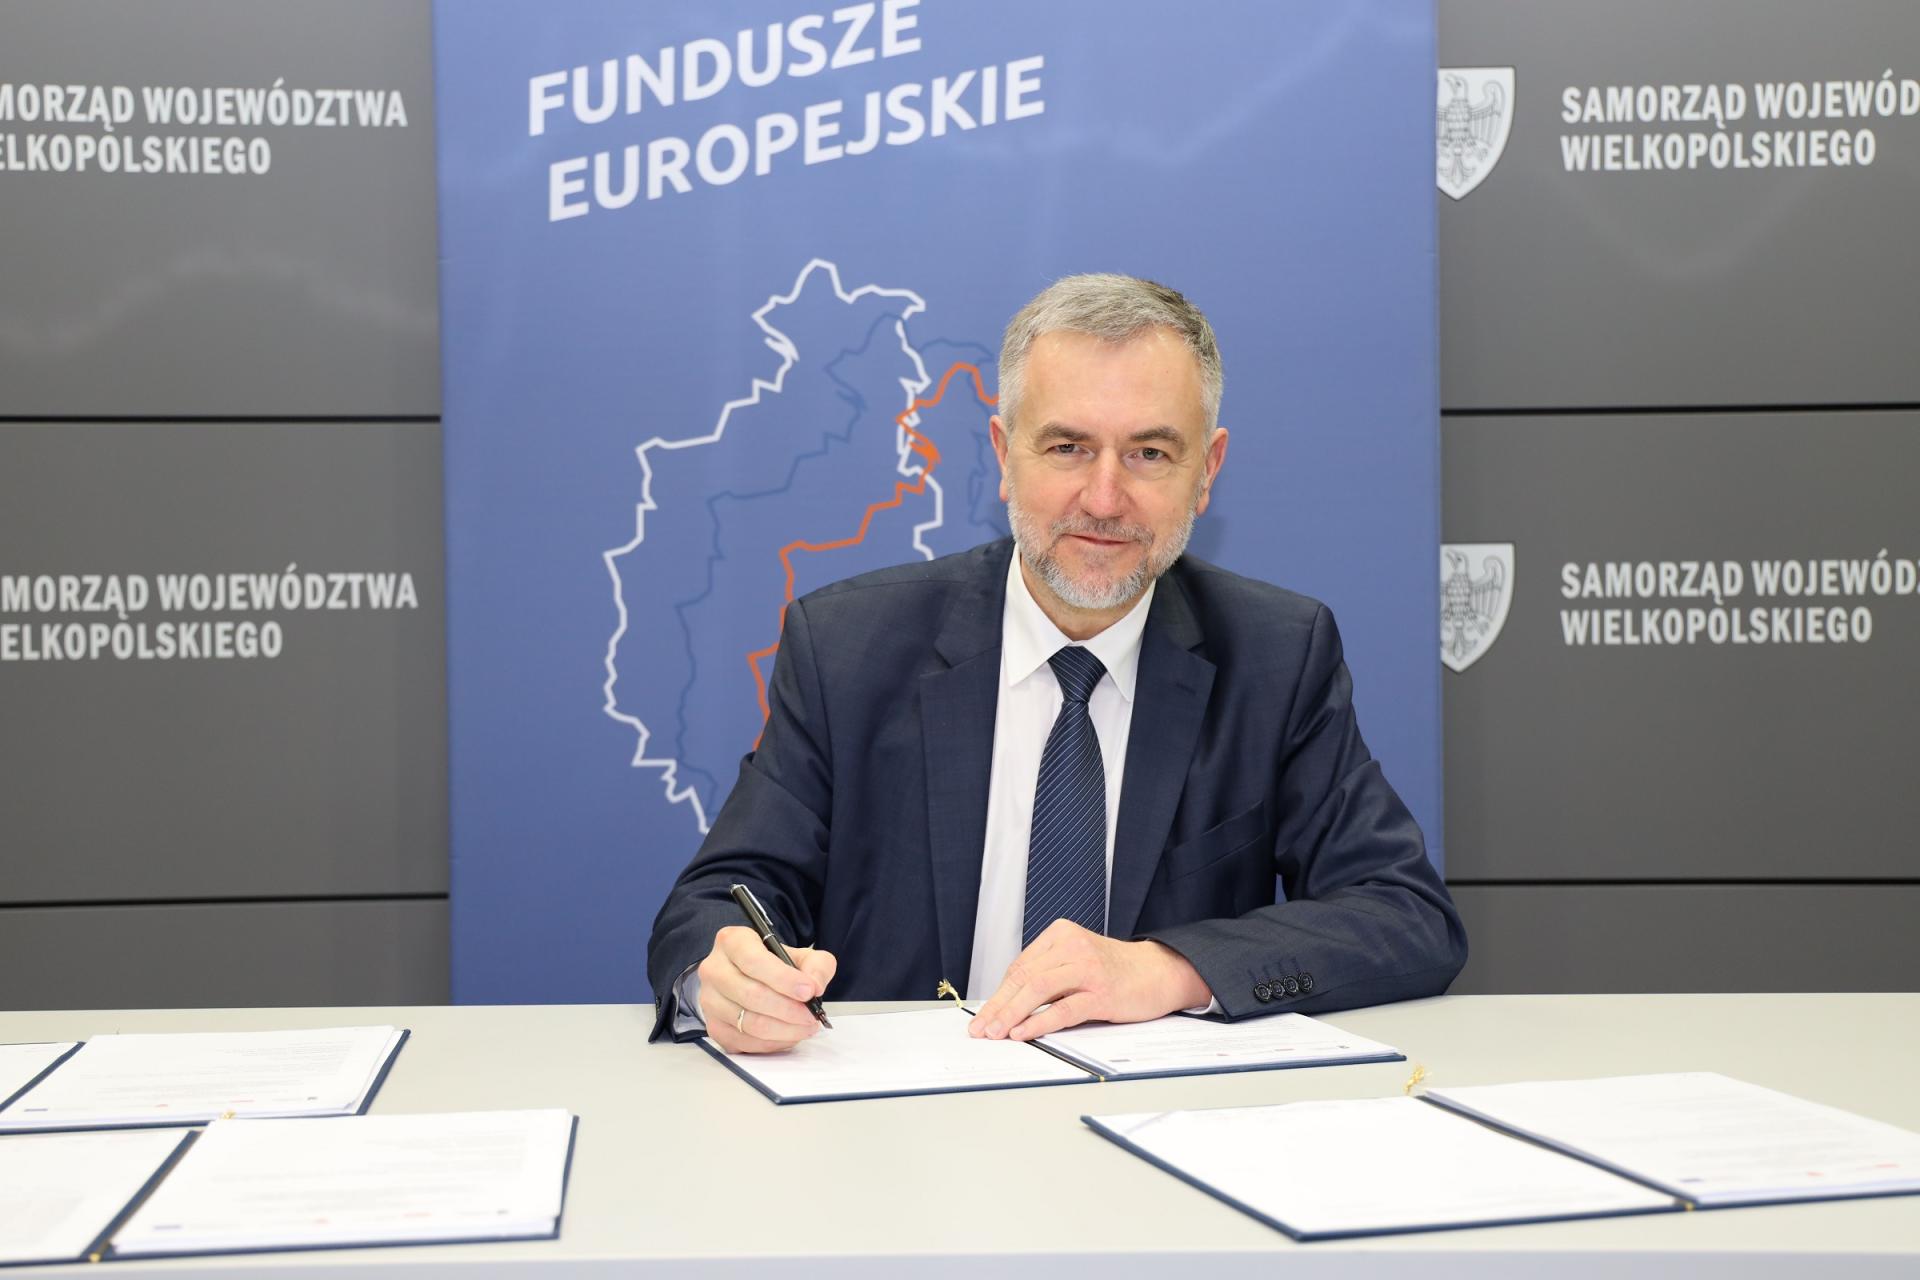  Wielkopolskie gminy za unijne pieniądze z WRPO 2014+ budują  - zobacz więcej